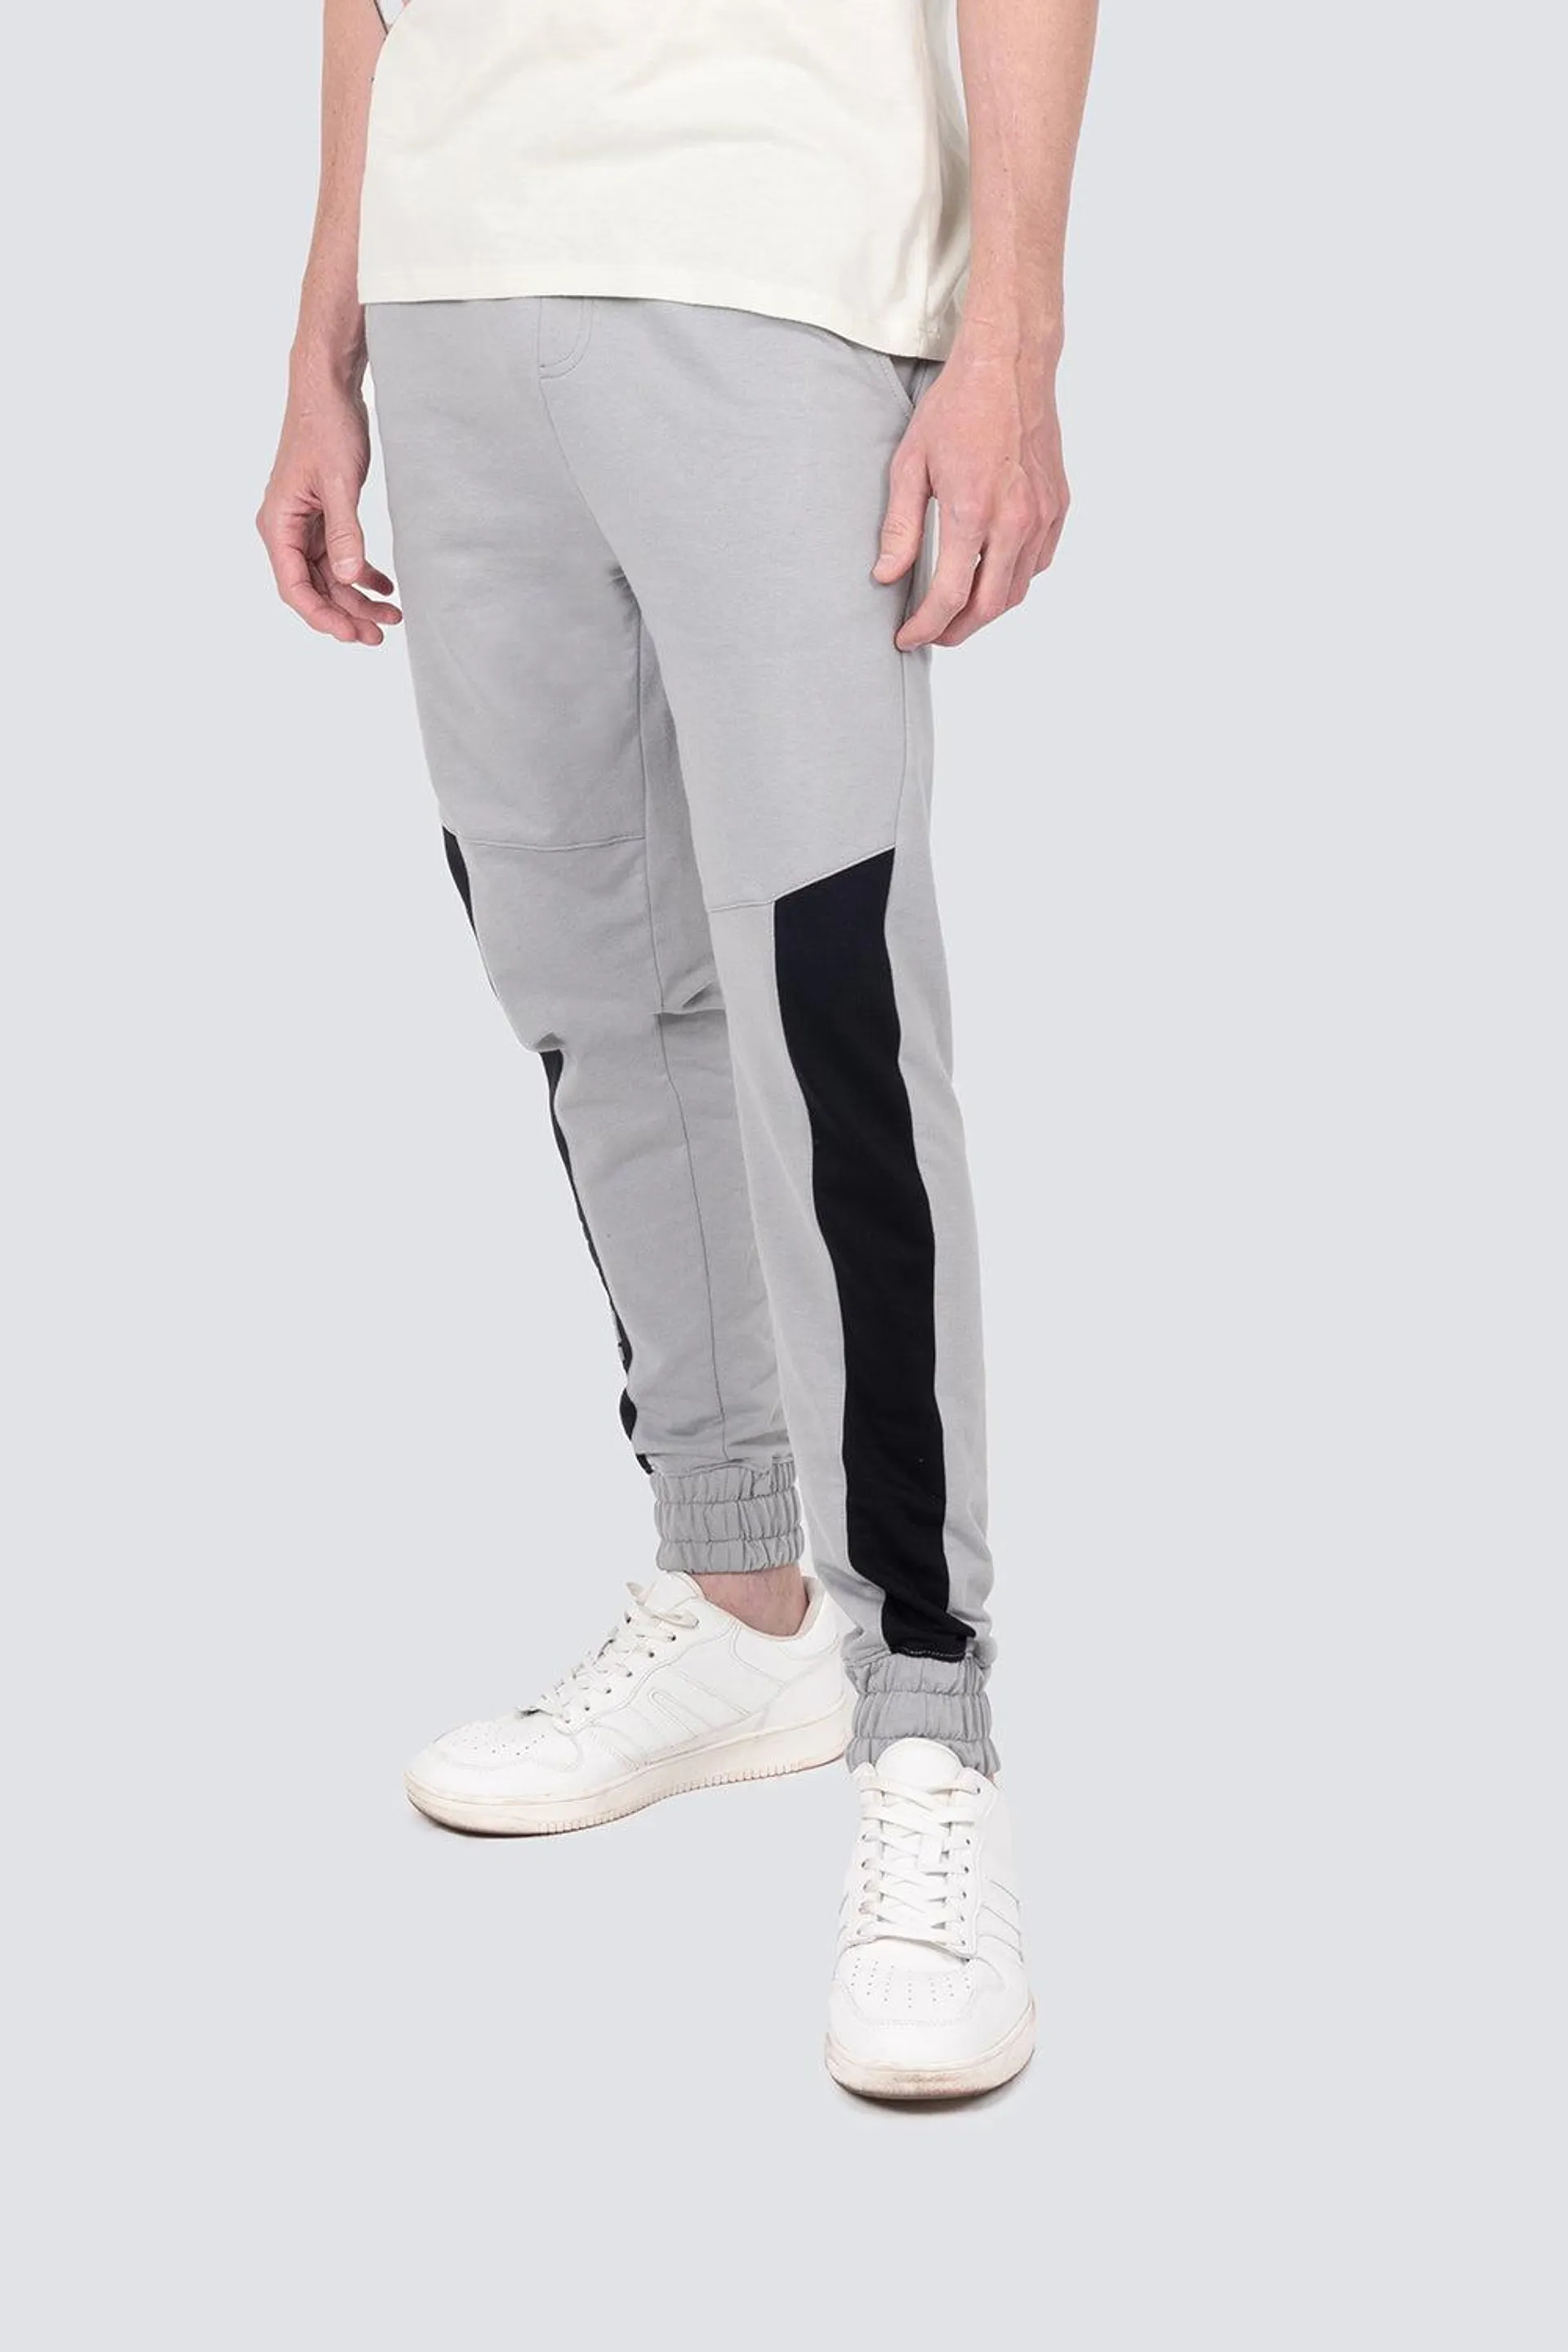 Pantalón deportivo gris con negro